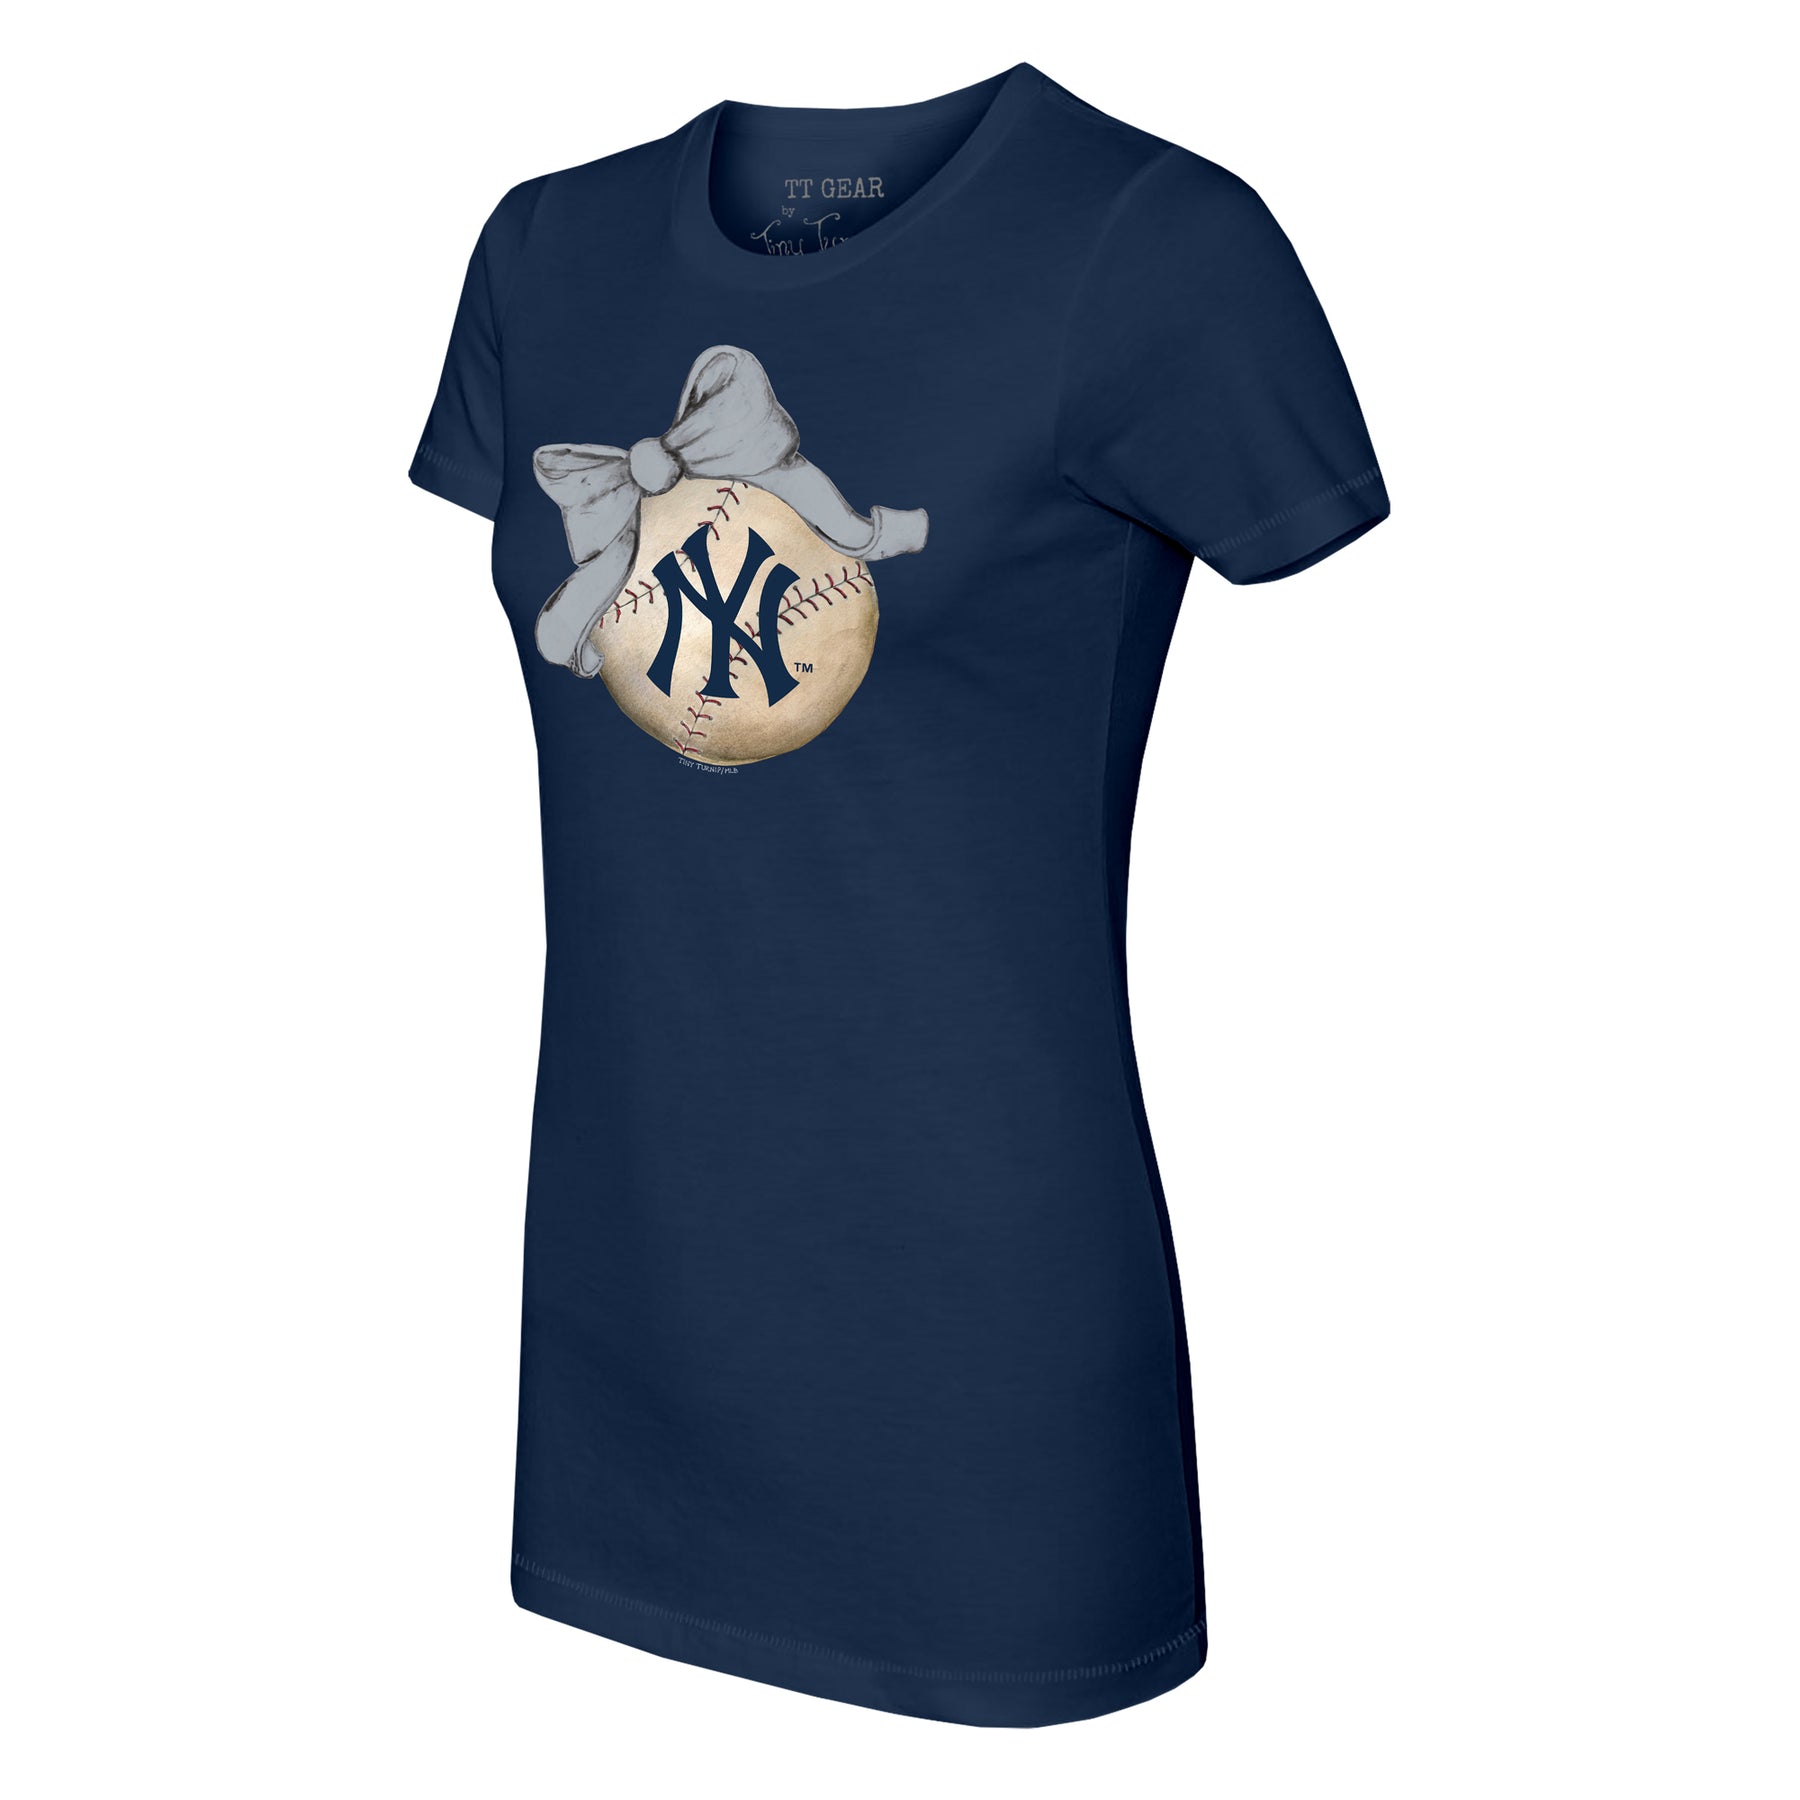 New York Yankees Tiny Turnip Women's Diamond Cross Bats T-Shirt - White